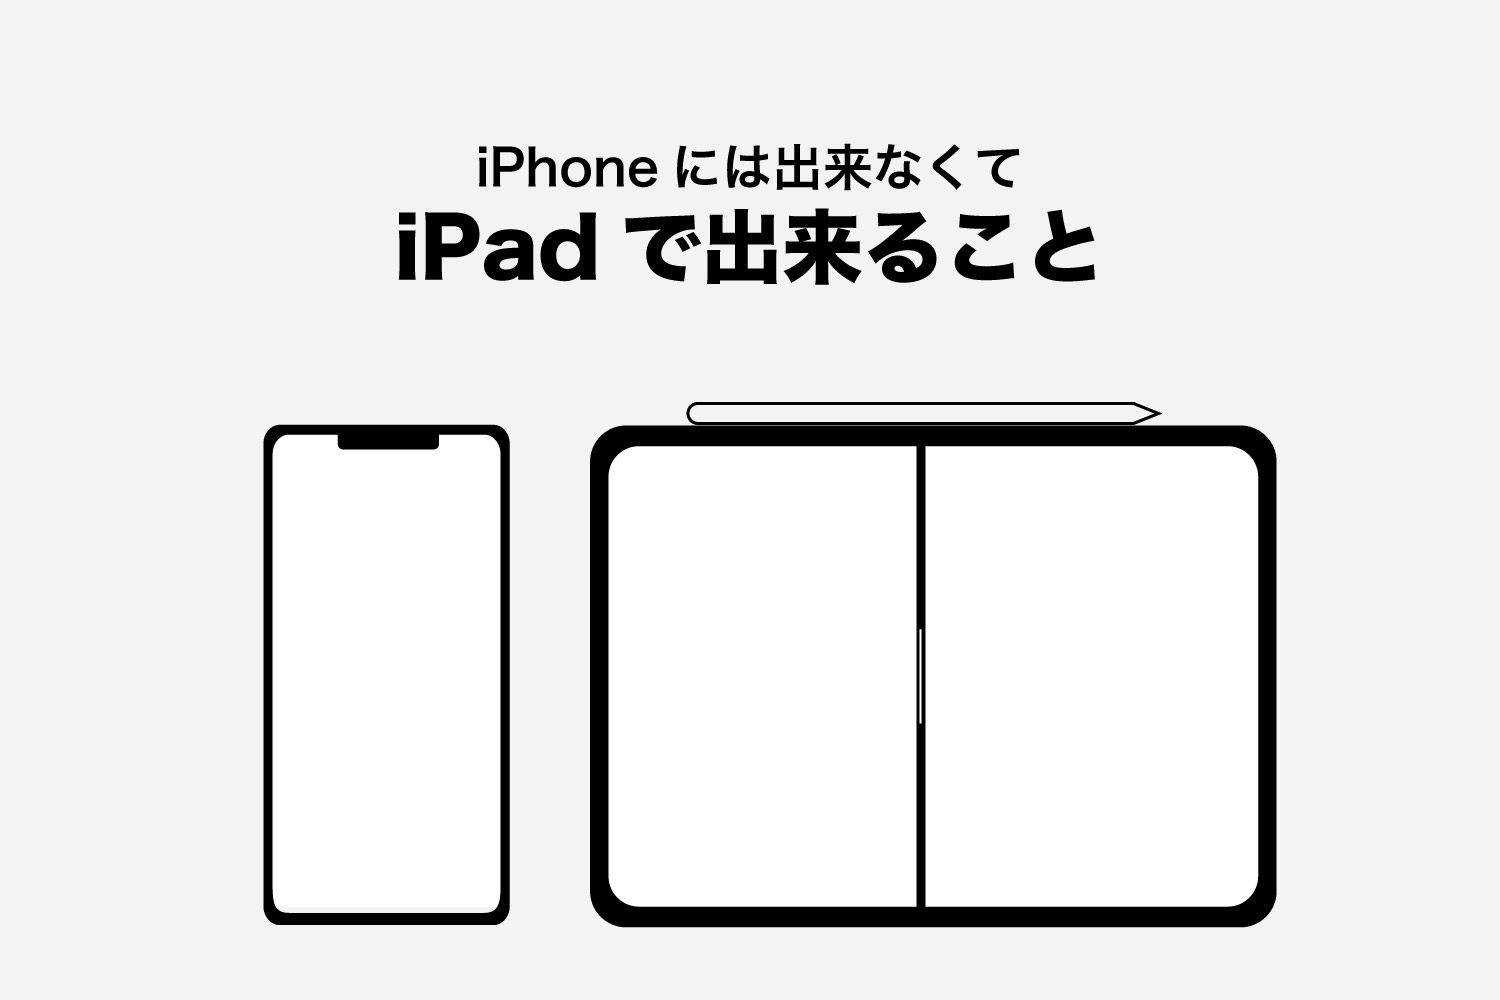 iPhoneには出来なくて、iPadで出来ること